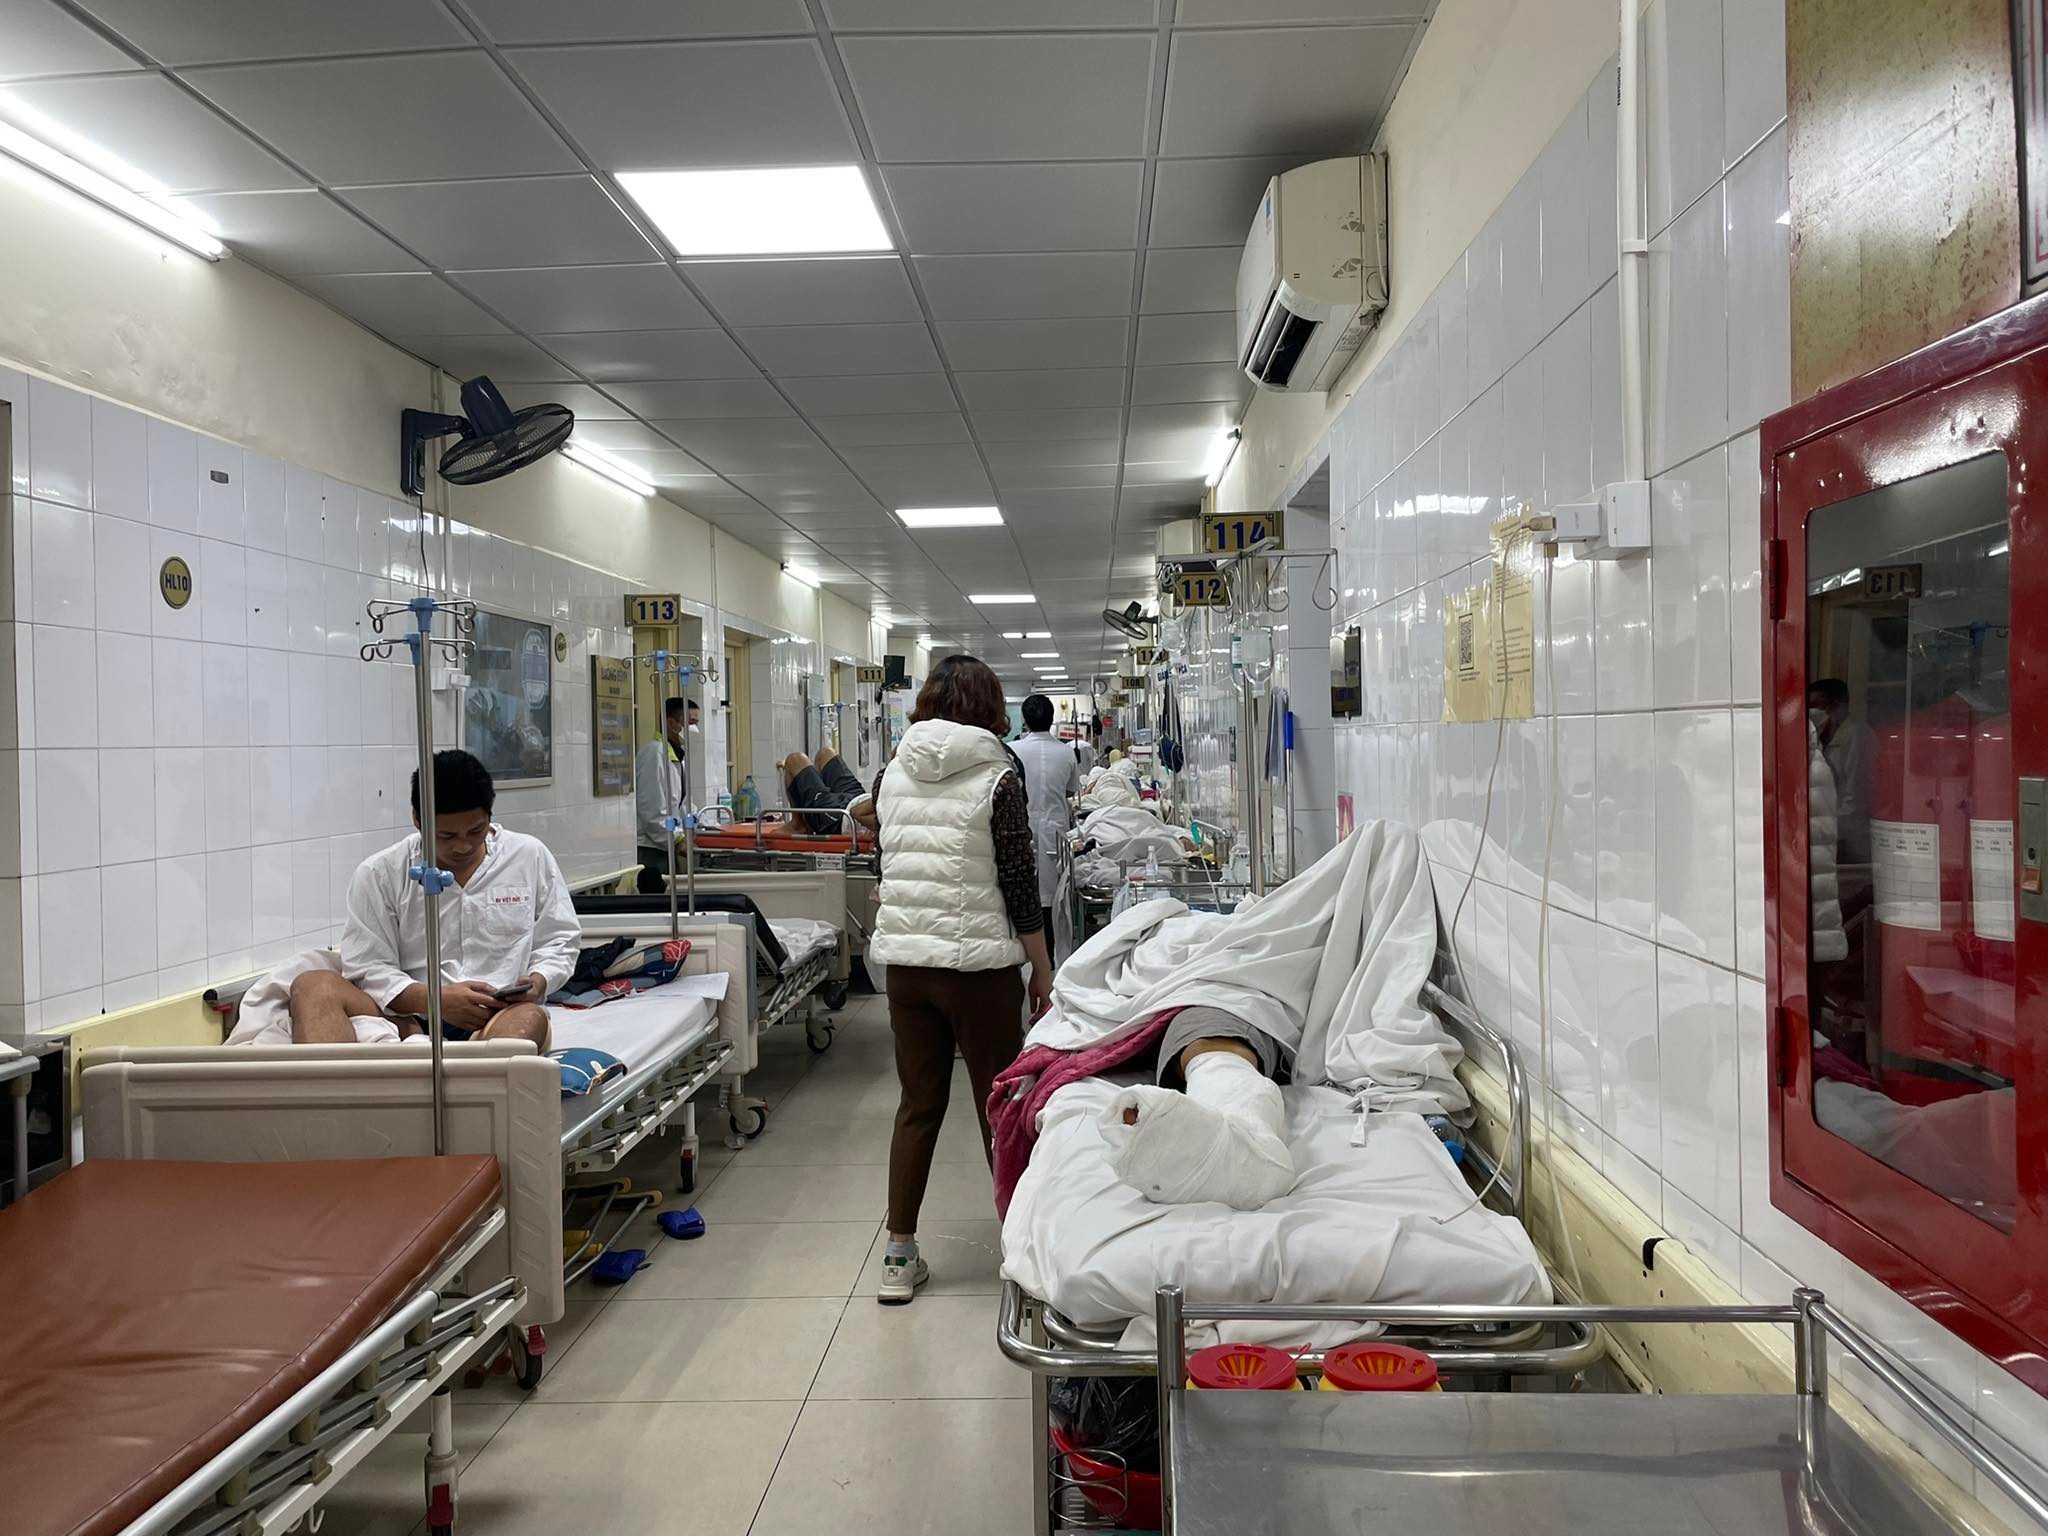 Bệnh viện Việt Đức cạn vật tư, bệnh nhân phải hoãn mổ: “Đau lắm nhưng cũng phải về” - 1